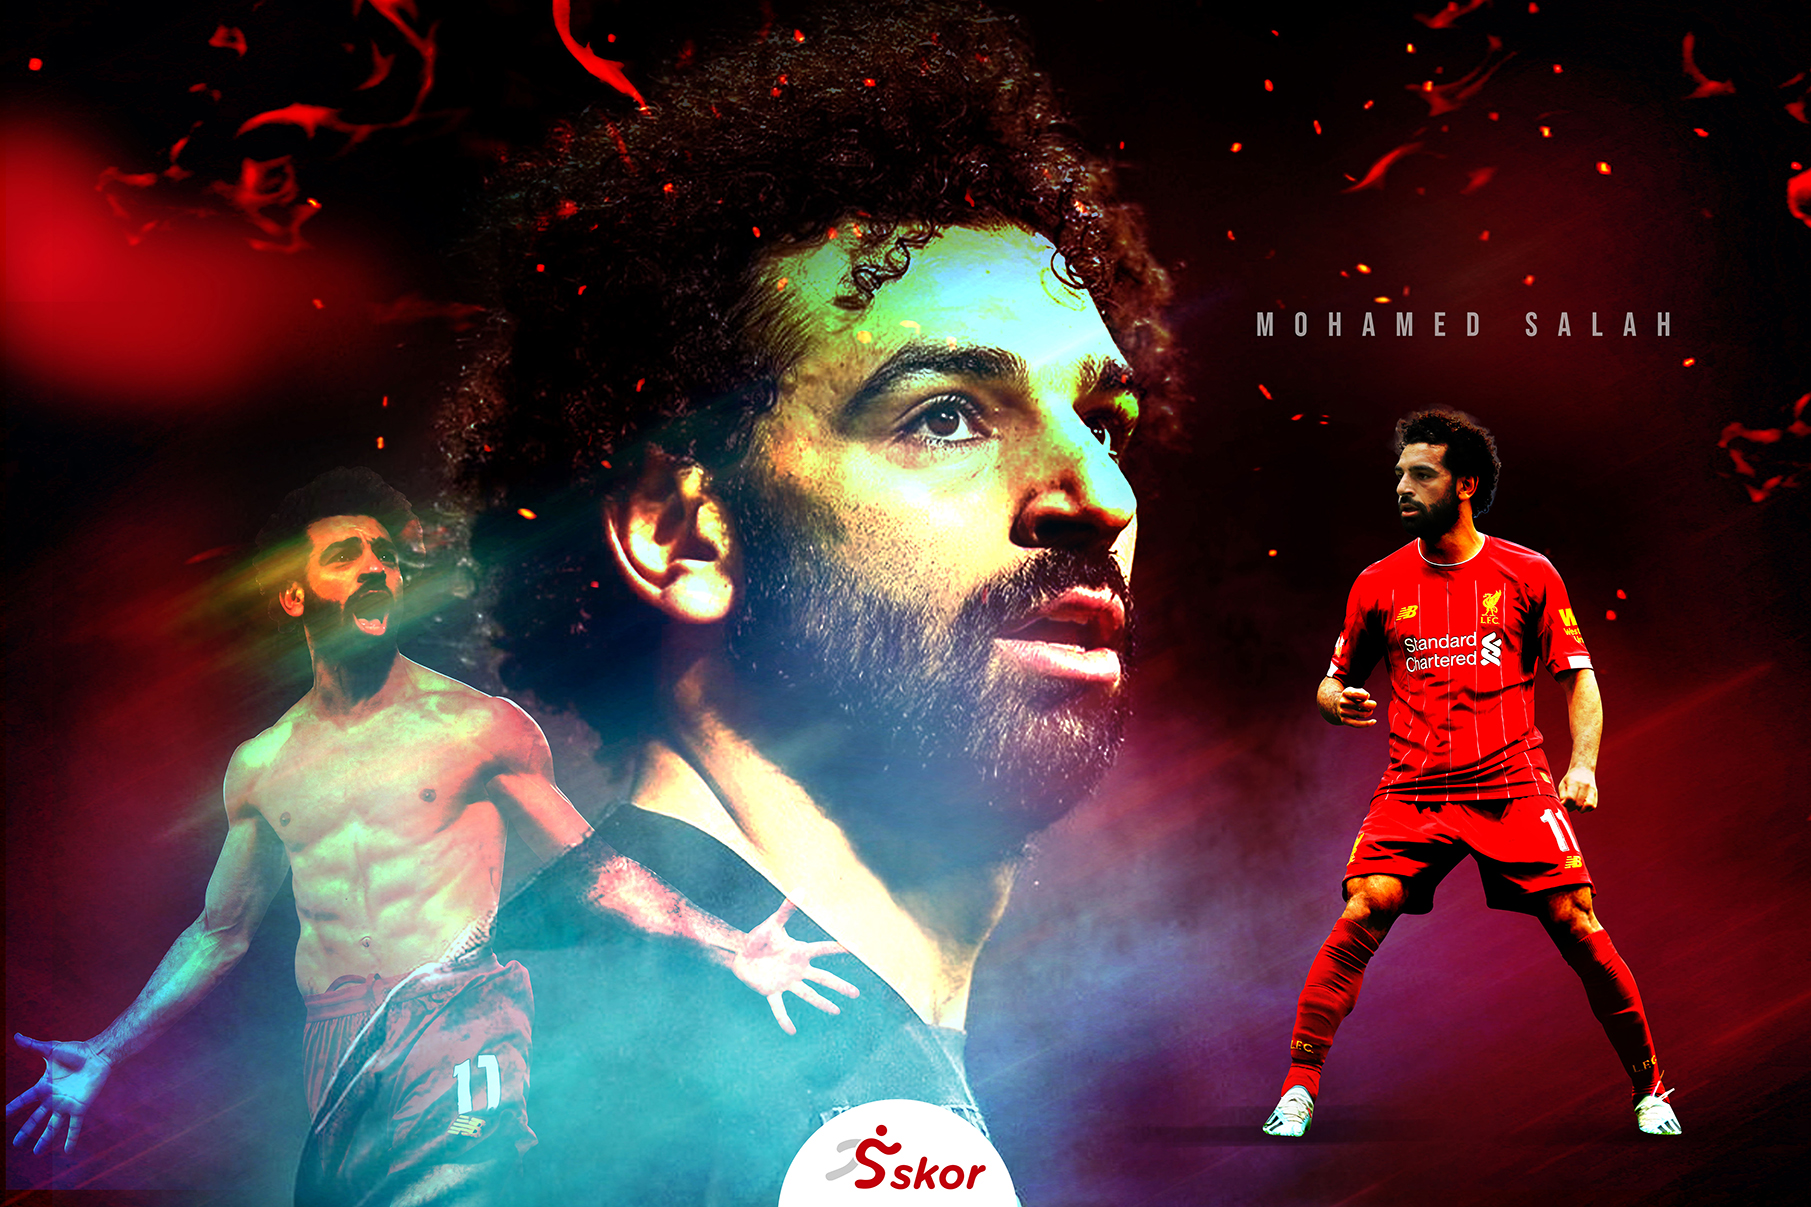 Top Skor Liga Inggris: Mohamed Salah Masih Teratas meski Liverpool Kalah